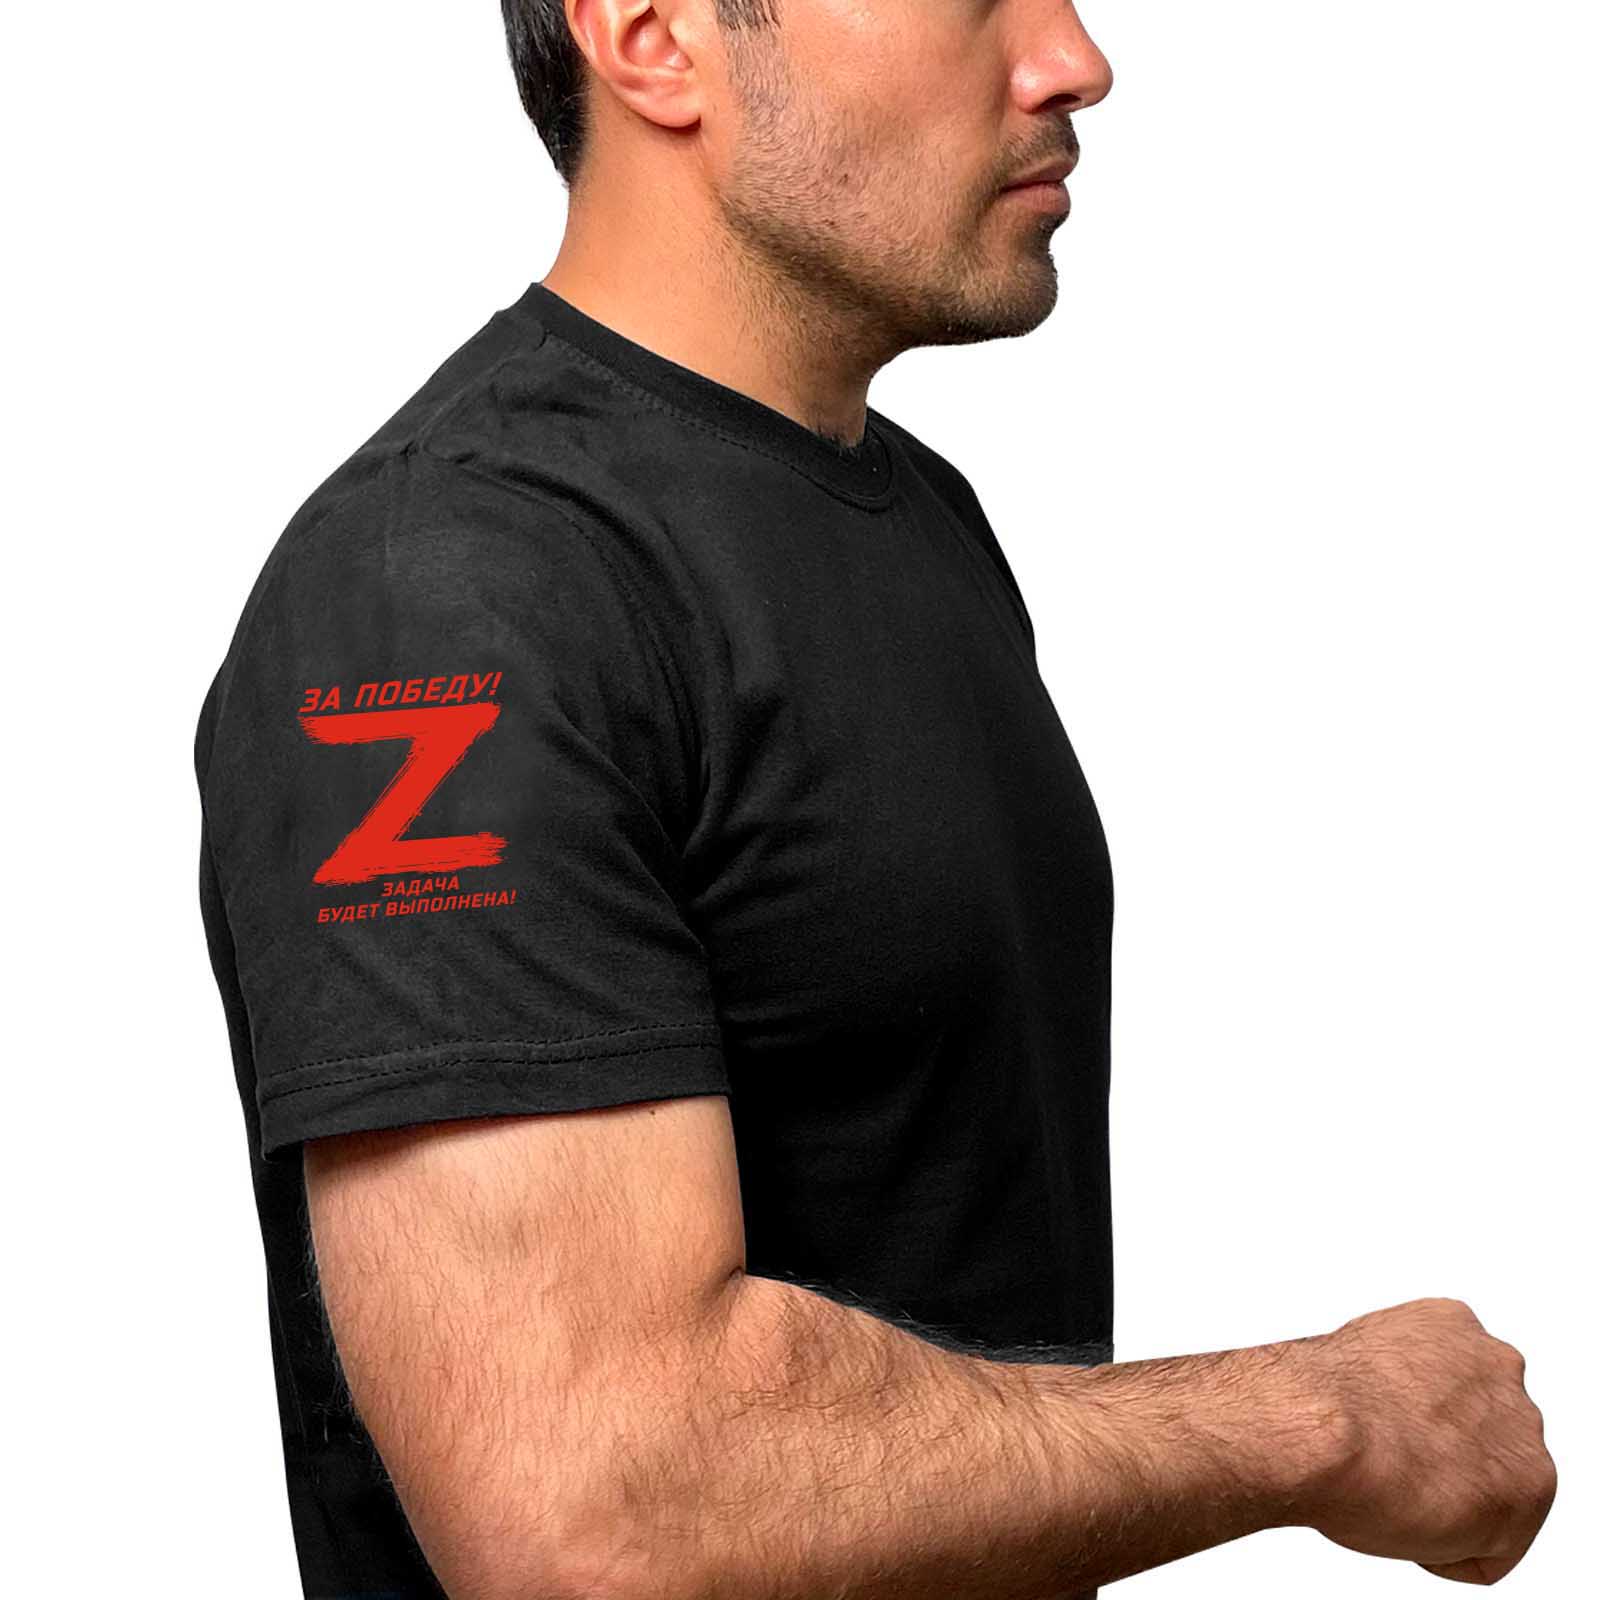 Чёрная футболка с символикой Z на рукаве